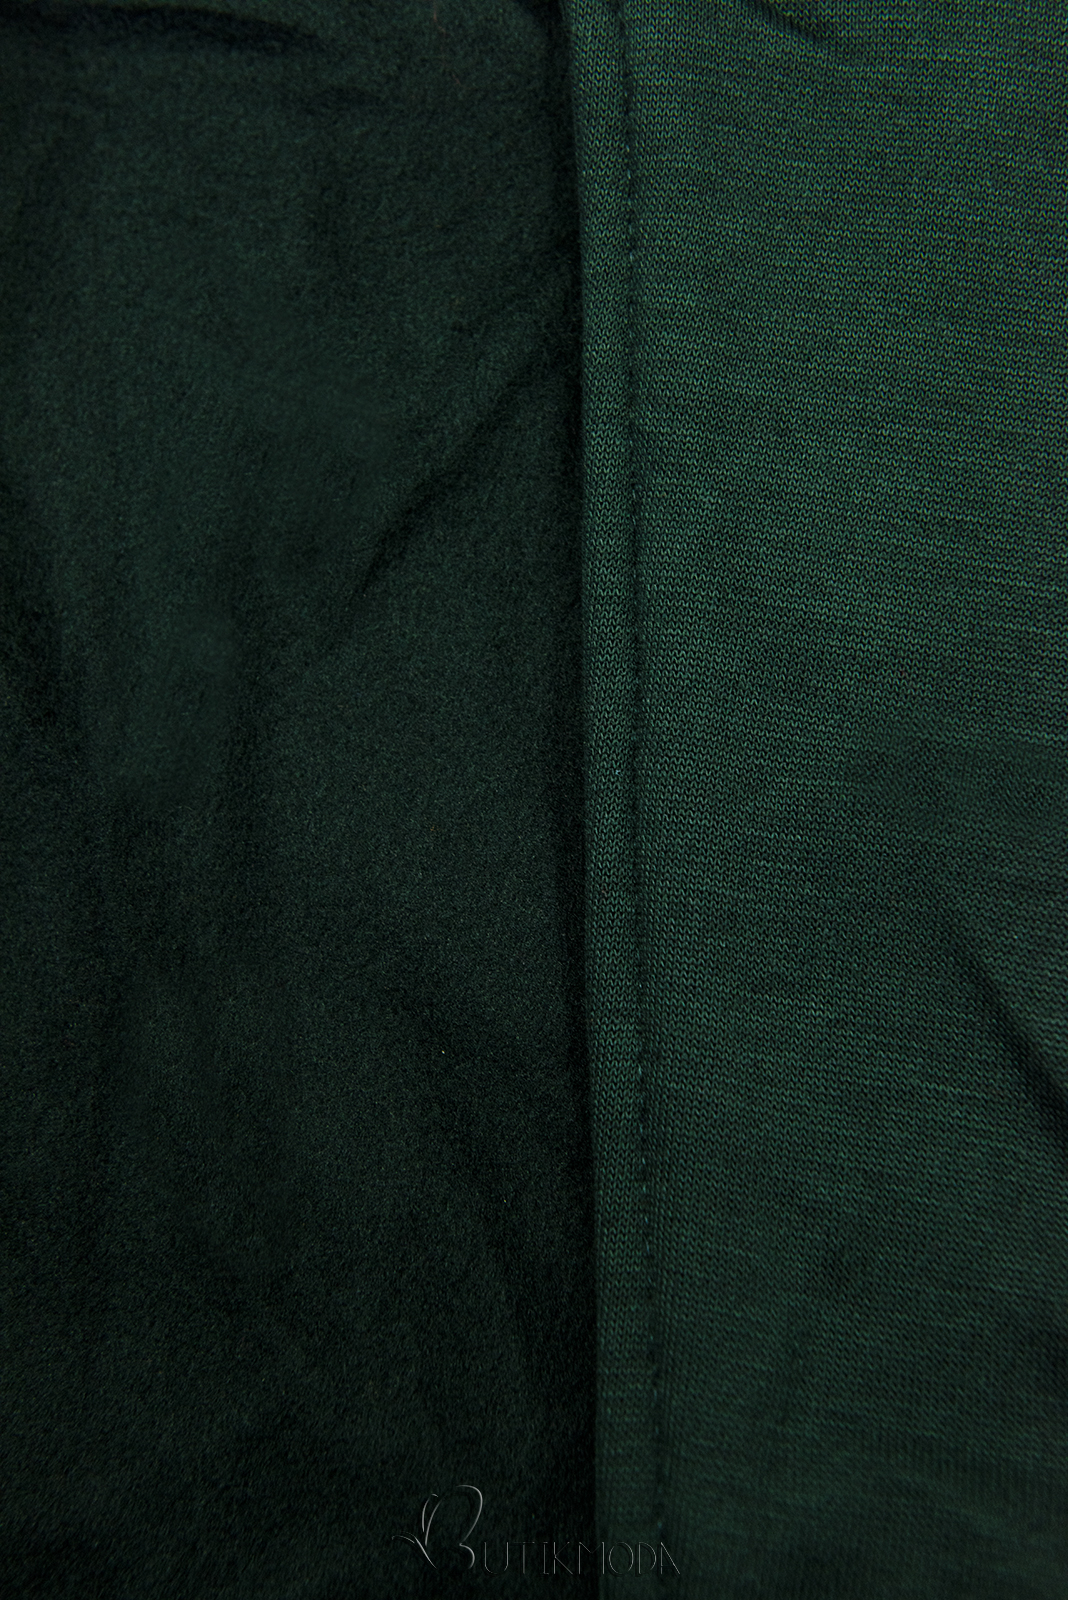 Smaragdzöld színű hosszű felső aszimmetrikus cipzárral